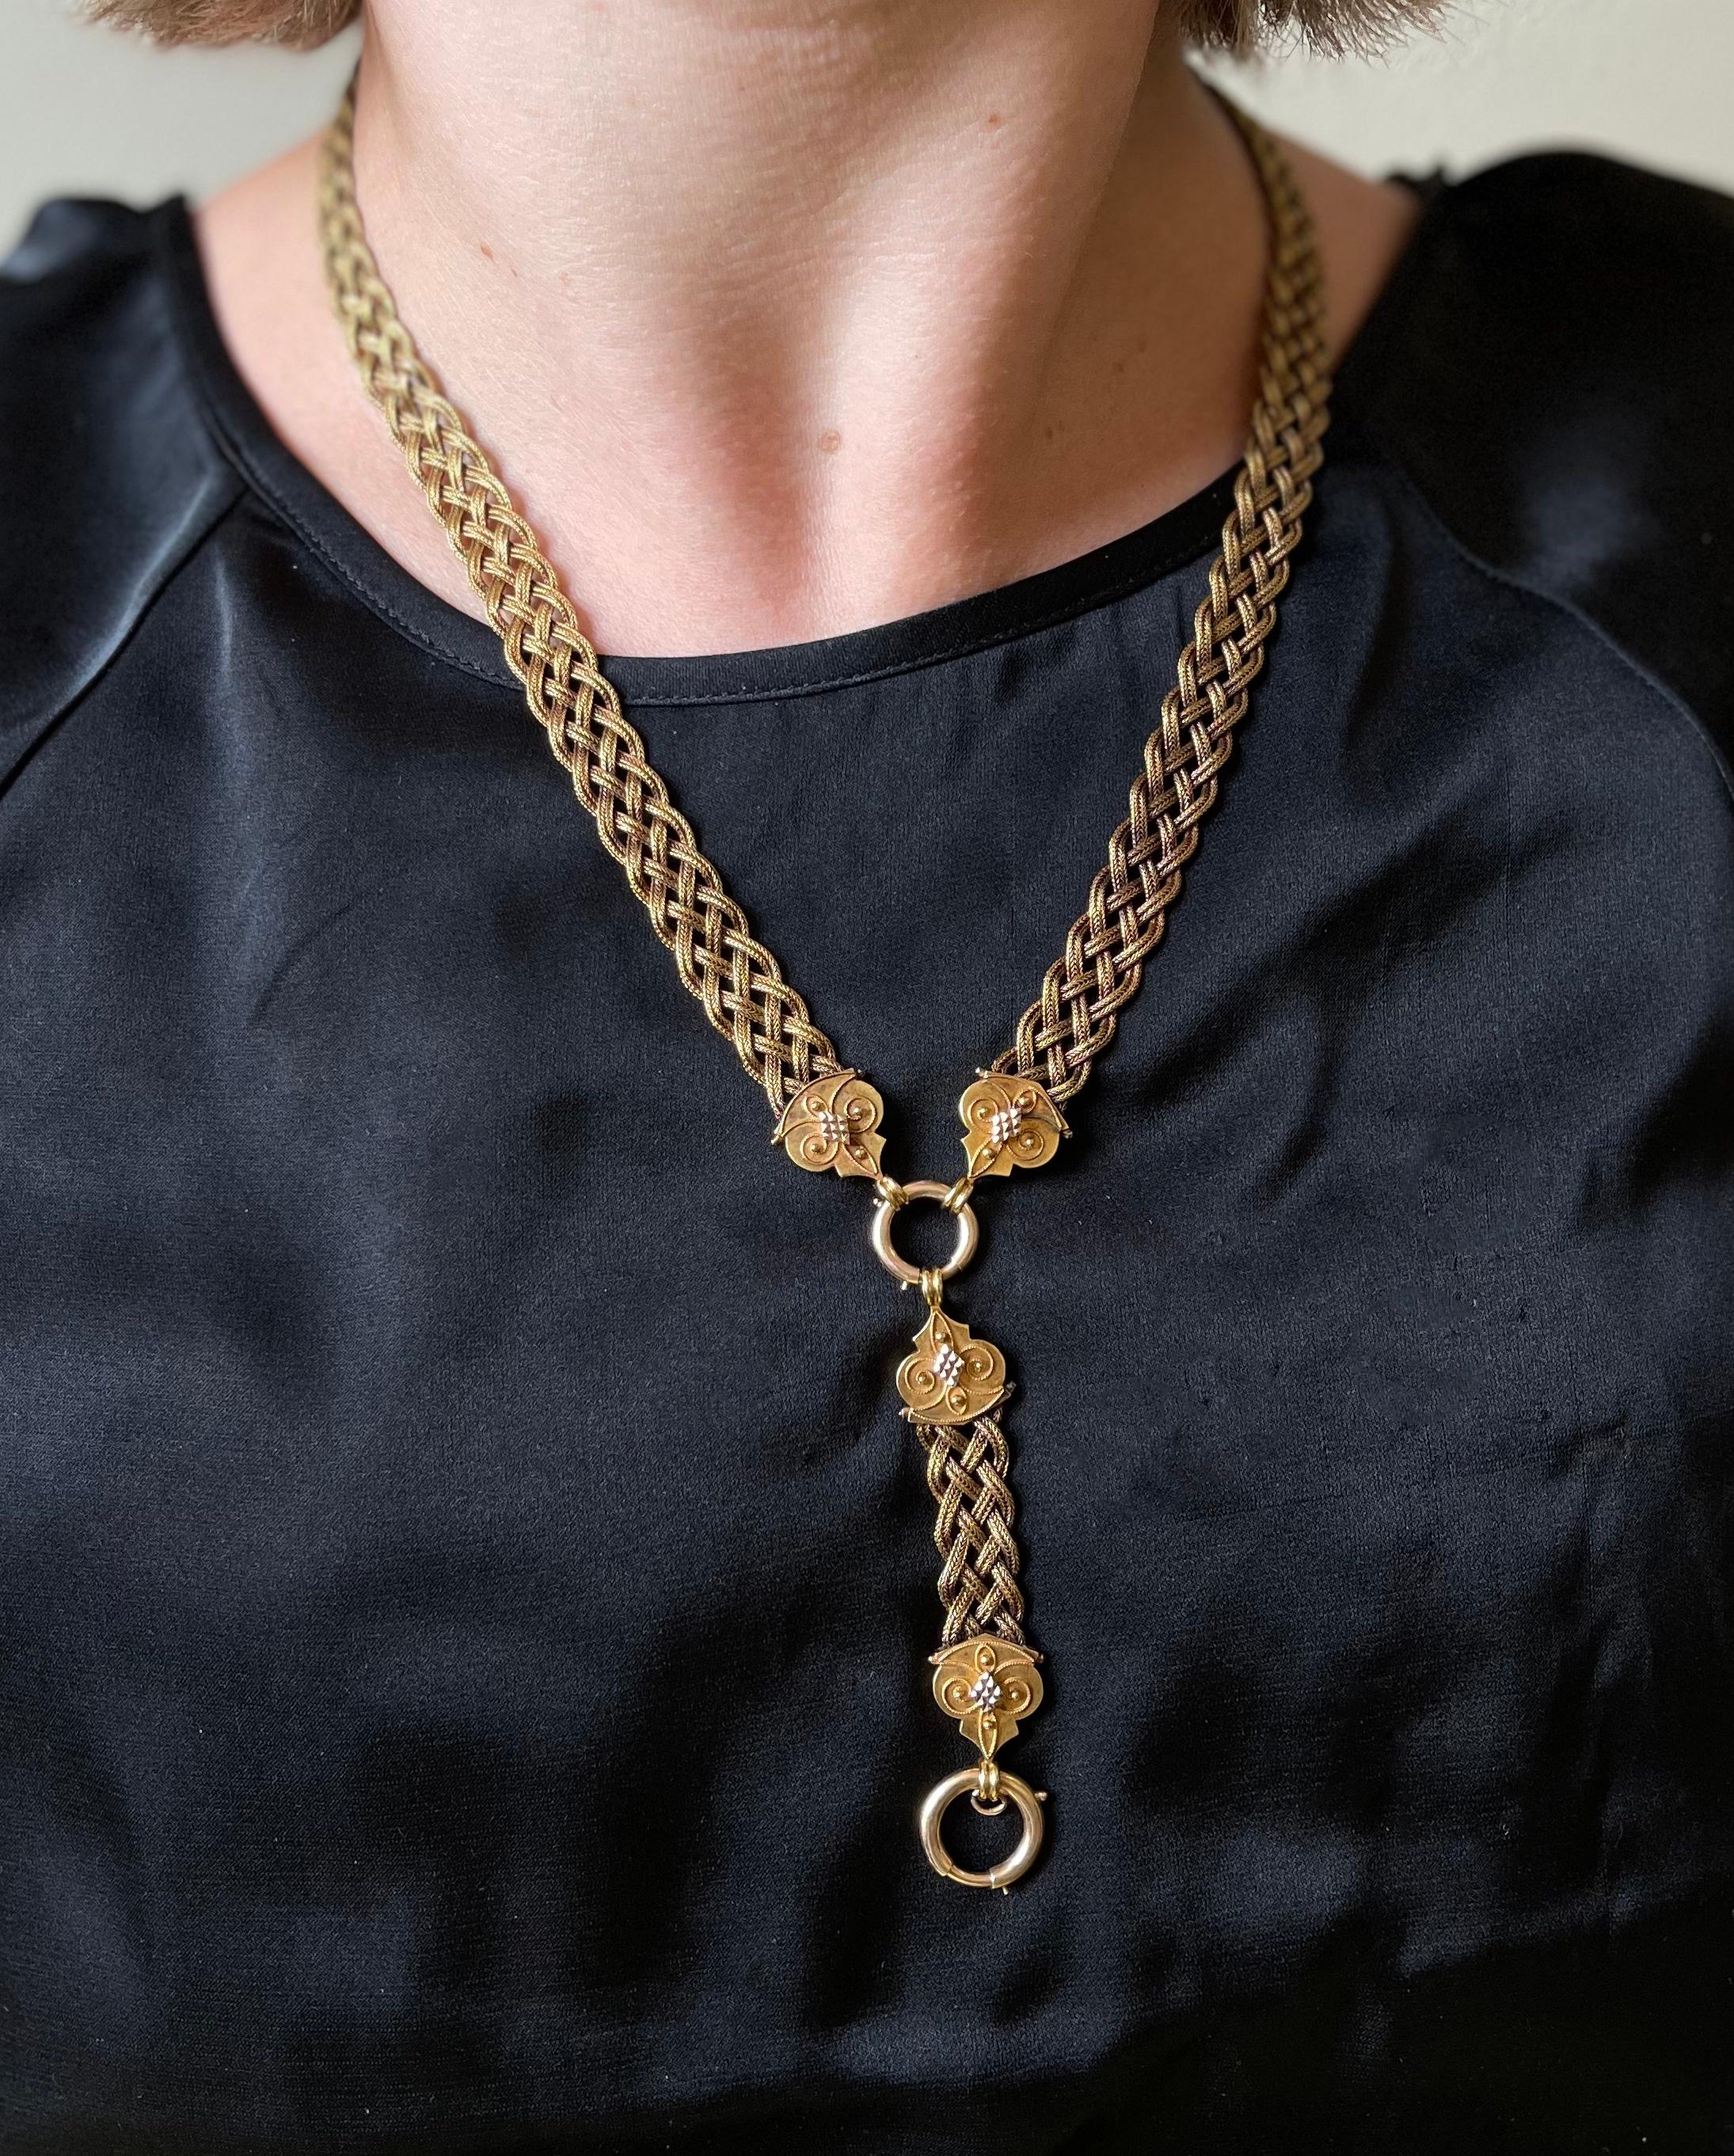 Antike viktorianische 14k Goldanhänger-Halskette mit geflochtener Kette und filigranen Endgliedern.  Die Halskette ist 20